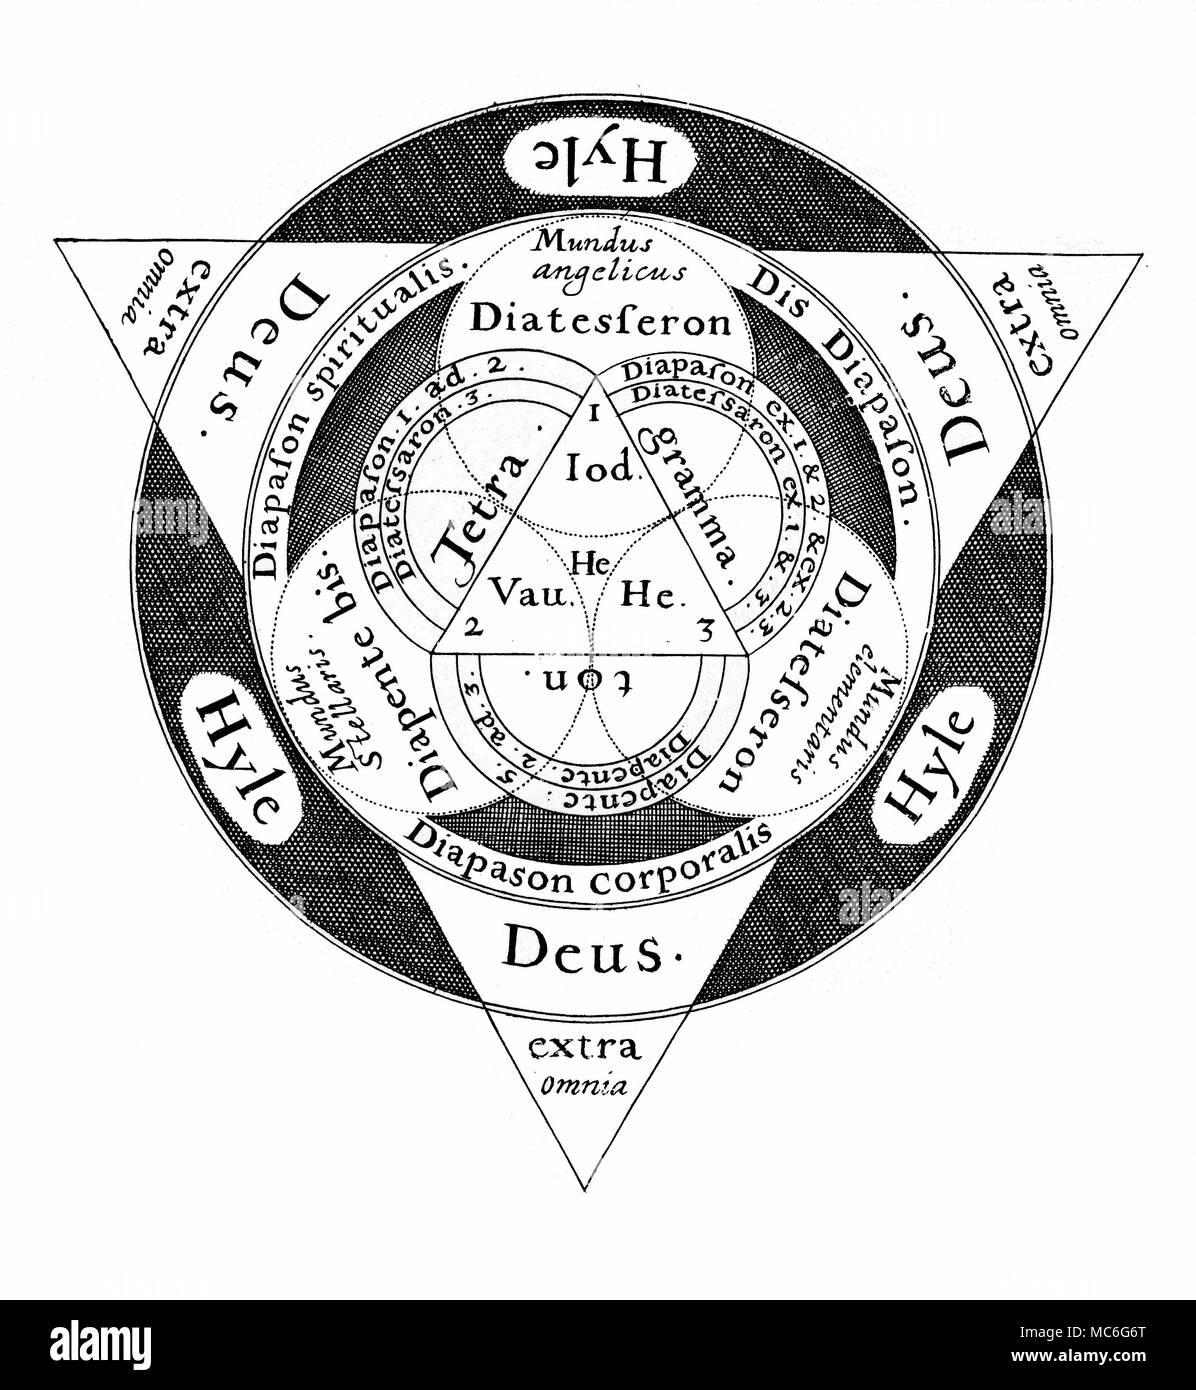 Symboles - la triade sacrée une gravure d'un dessin conçu par l'Occultiste Robert Fludd, pour illustrer les propriétés et d'harmonies musicales de la Trinité. Le triangle de la divinité, qui est un trois en Un, s'exprime dans la lumière dans l'obscurité de la matière (Hyle). La conséquence de cette fusion de la lumière et l'obscurité est la création de trois mondes (les cercles qui se touchent les trois lignes de l'ensemble de triangle : ce sont le monde angélique, le monde stellaire, et le monde élémentaire. L'ensemble intérieur de triangle est unie à l'extérieur par intervalles musicaux (le Diapente et l Banque D'Images